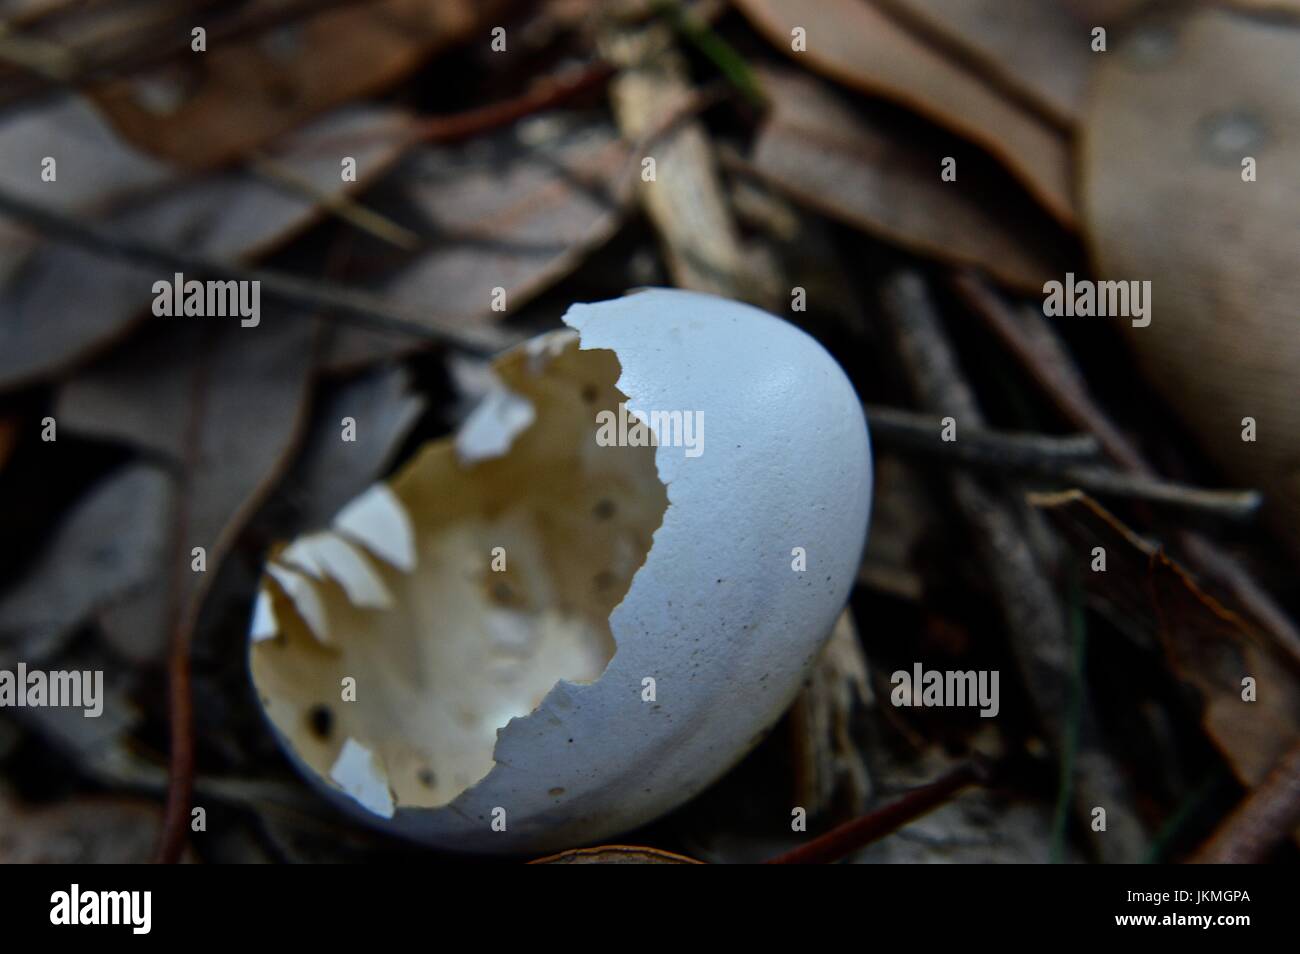 Broken egg shell Stock Photo